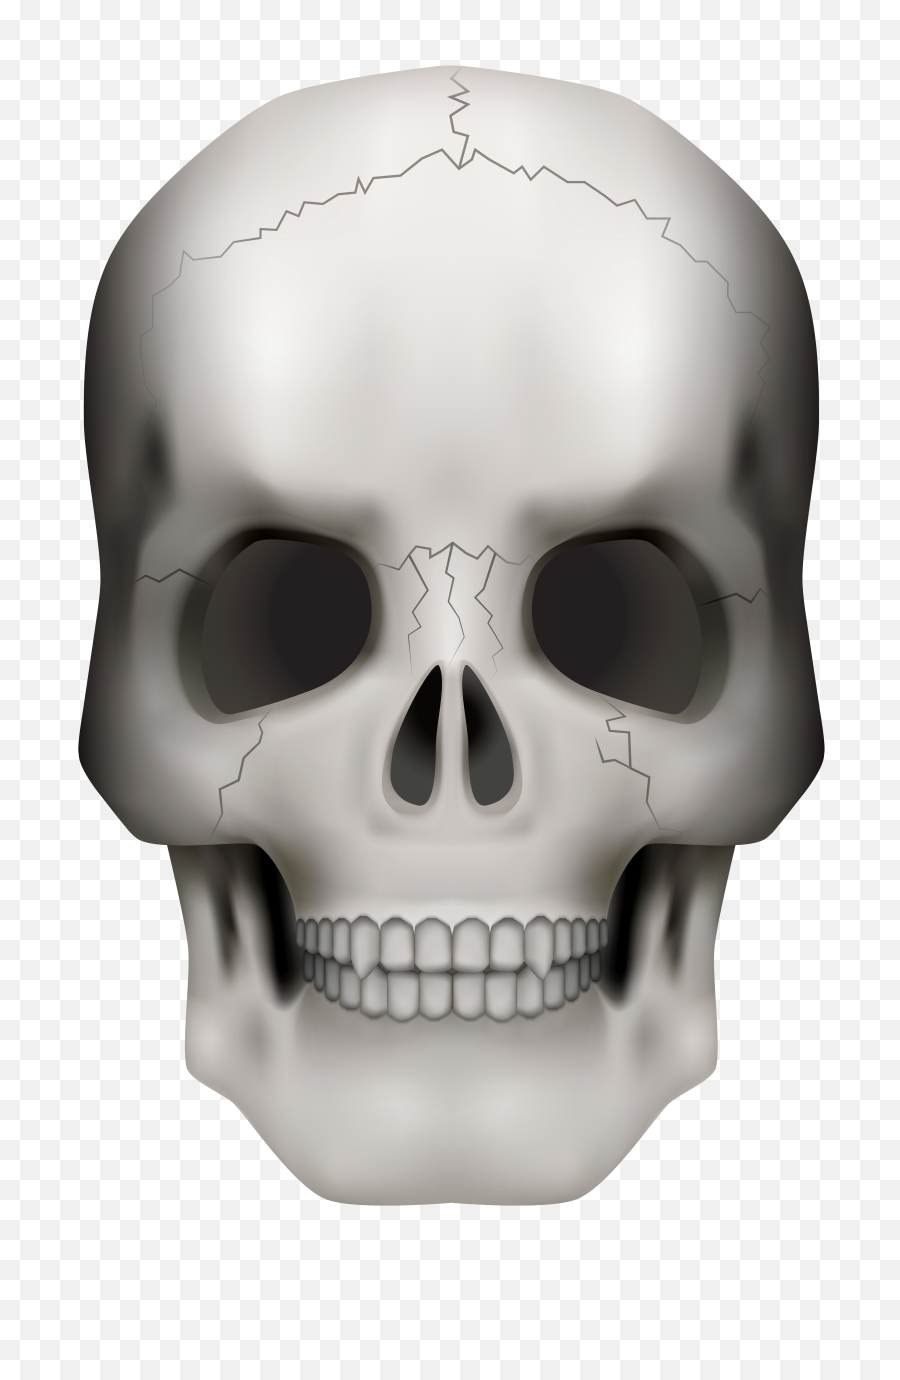 Transparent Background Skull Png - Transparent Background Skull In Png,White Skull Png